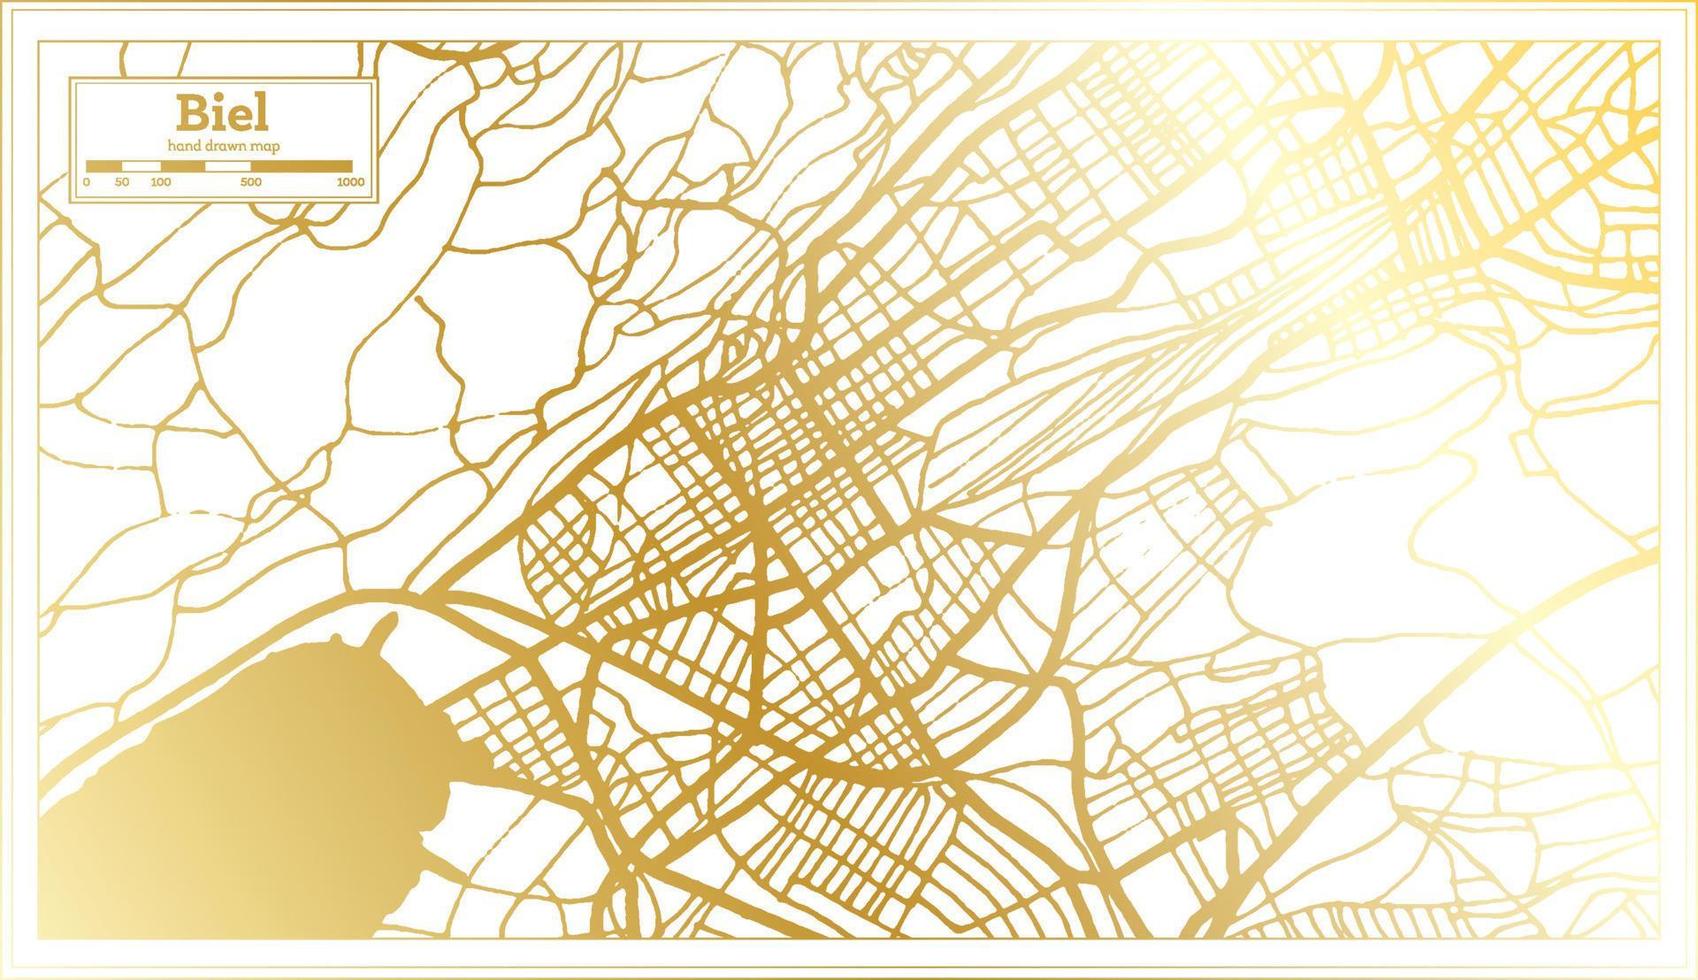 biel Zwitserland stad kaart in retro stijl in gouden kleur. schets kaart. vector